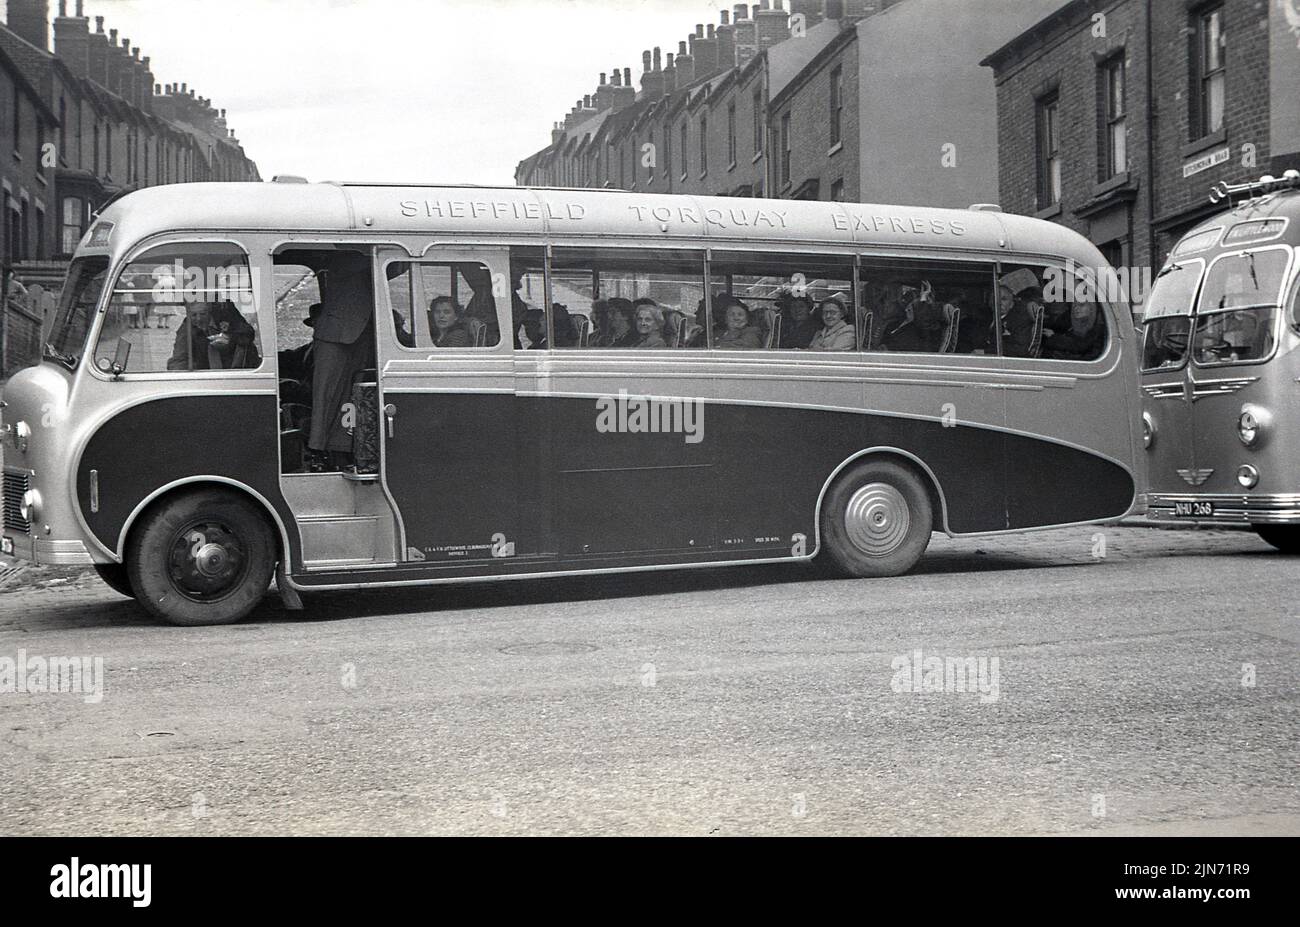 1950s, historique, excursion en autocar, Sheffield-Torquay Express. Passagers assis dans un autocar Littlewood Bros attendant sur Grimesthorpe Road devant l'épicerie Lily Bell, au coin de Ditchingham Road, Sheffield, South Yorkshire, Angleterre, Royaume-Uni. Banque D'Images